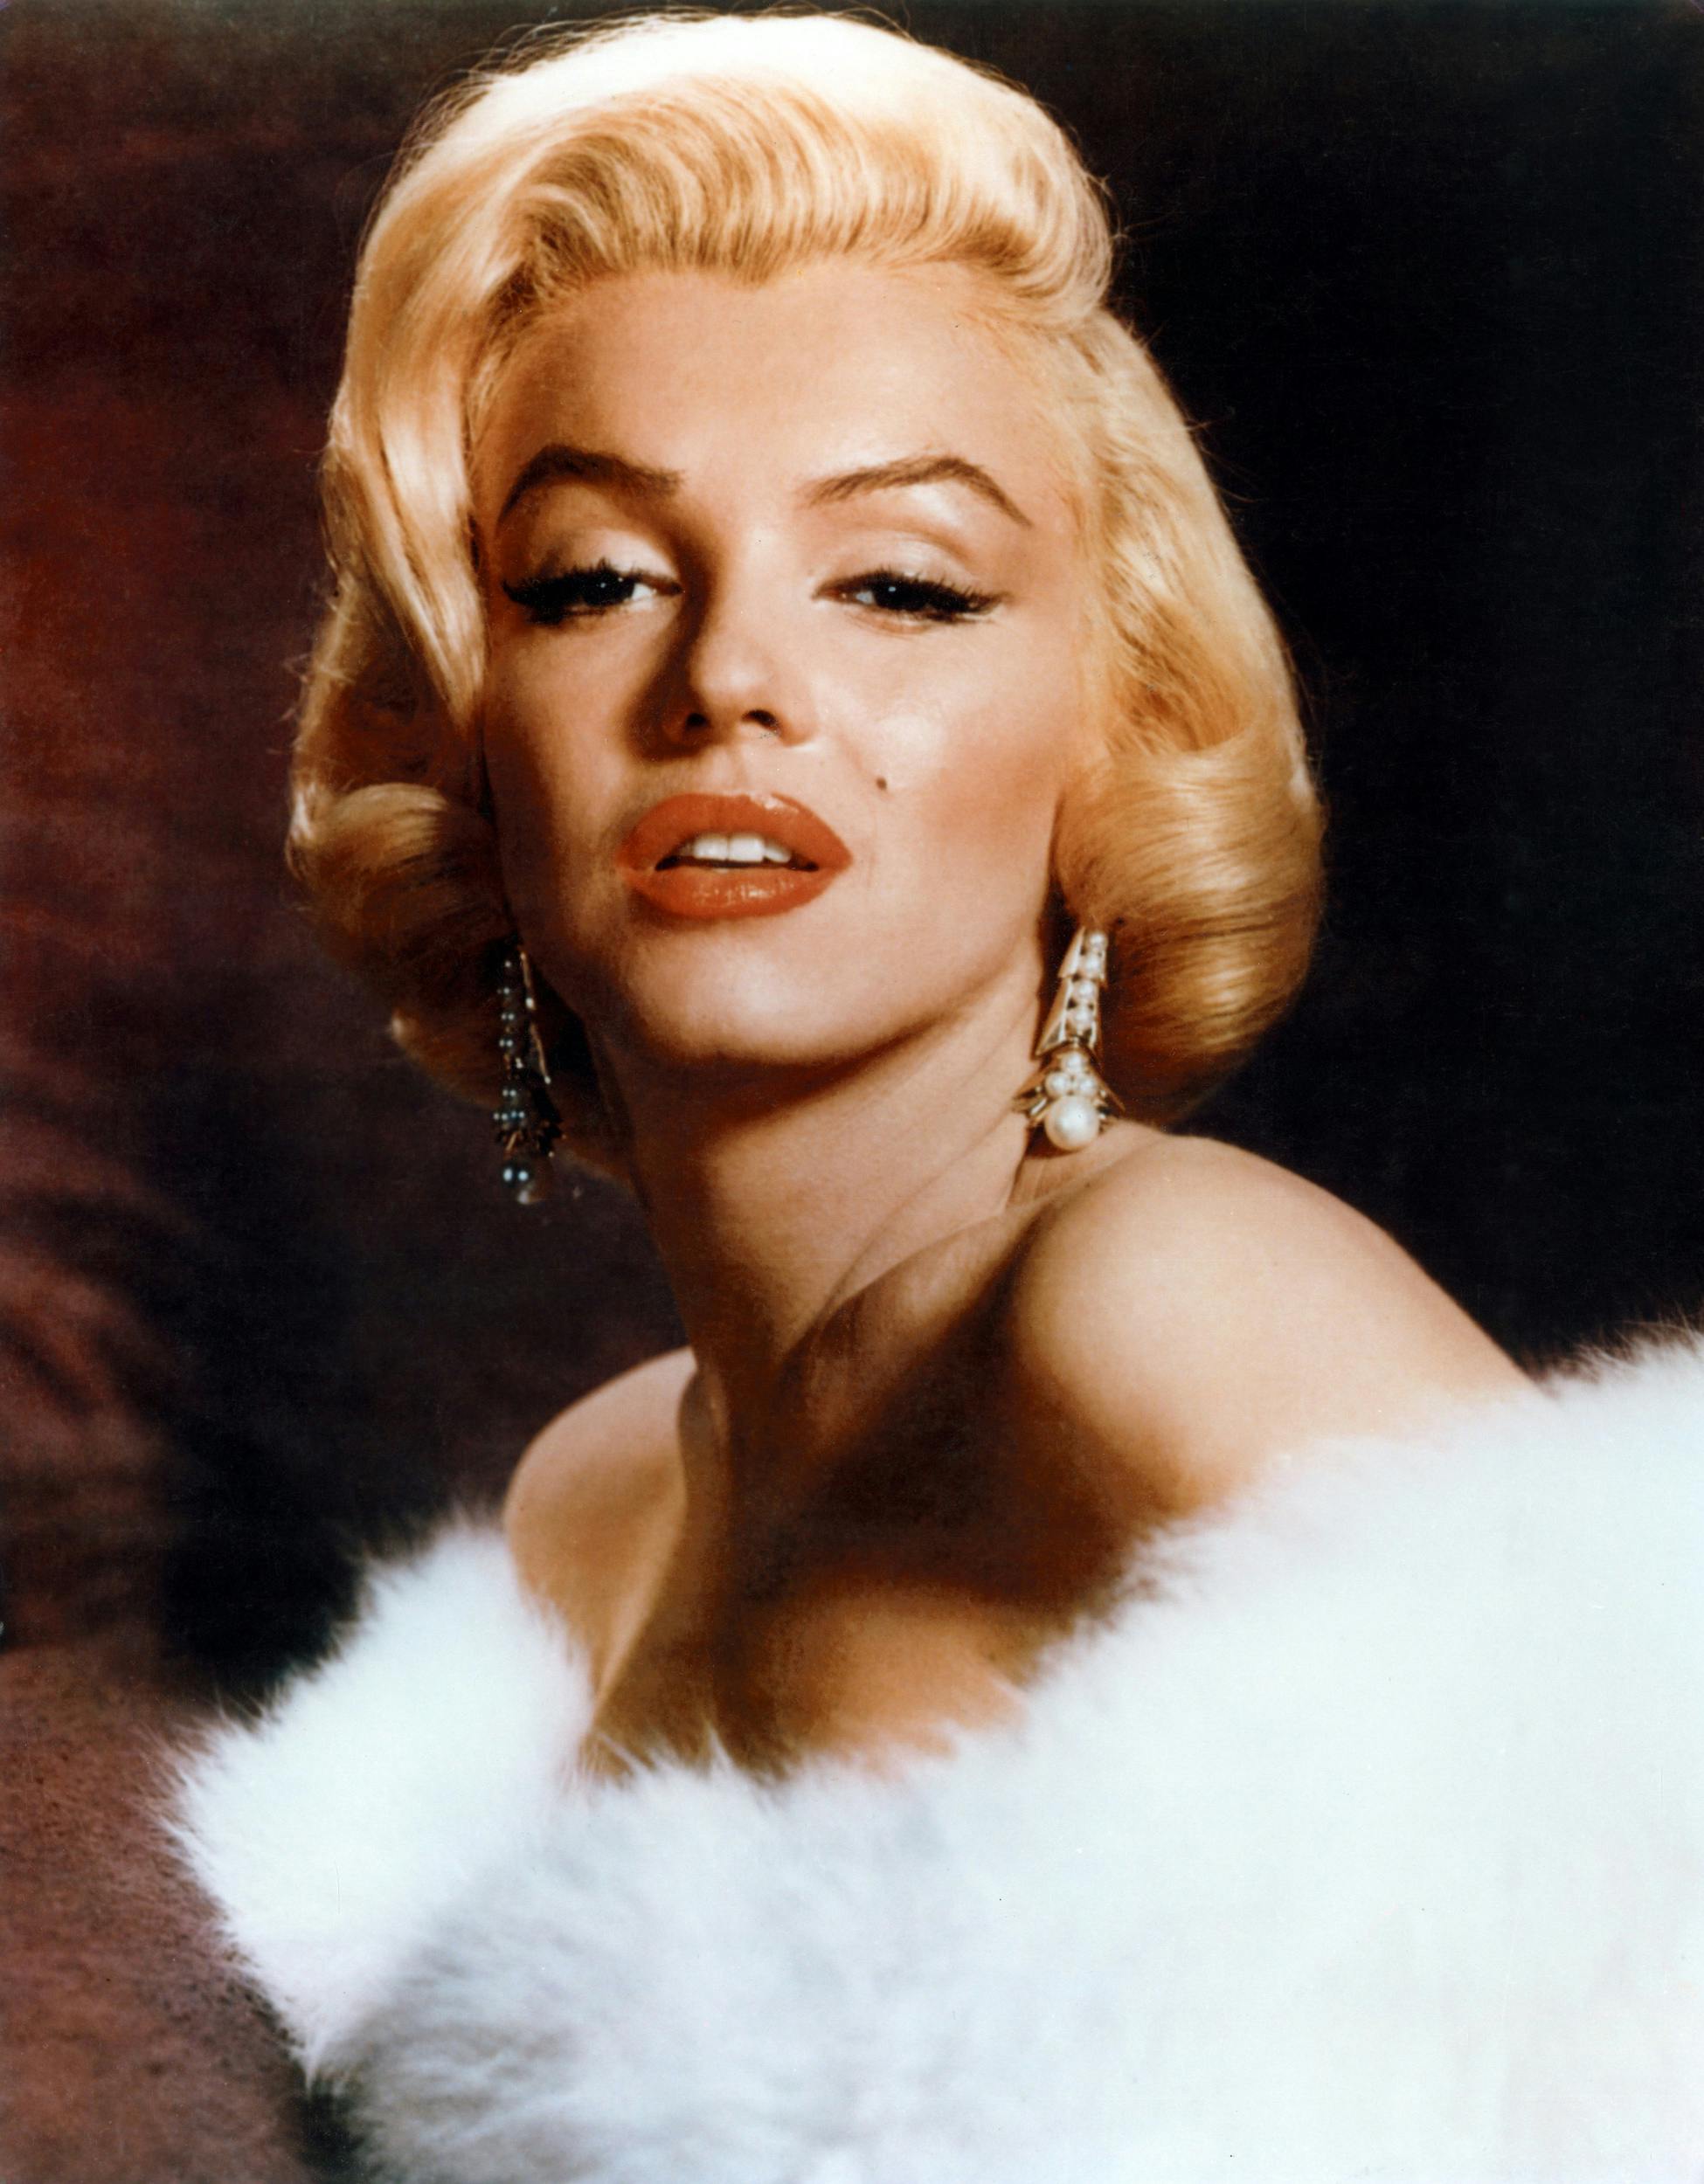 Marilyn Monroe var kendt som et kæmpe sexsymbol, men bag den vampede facade gemte der sig en kvinde med mange dæmoner.&nbsp;
